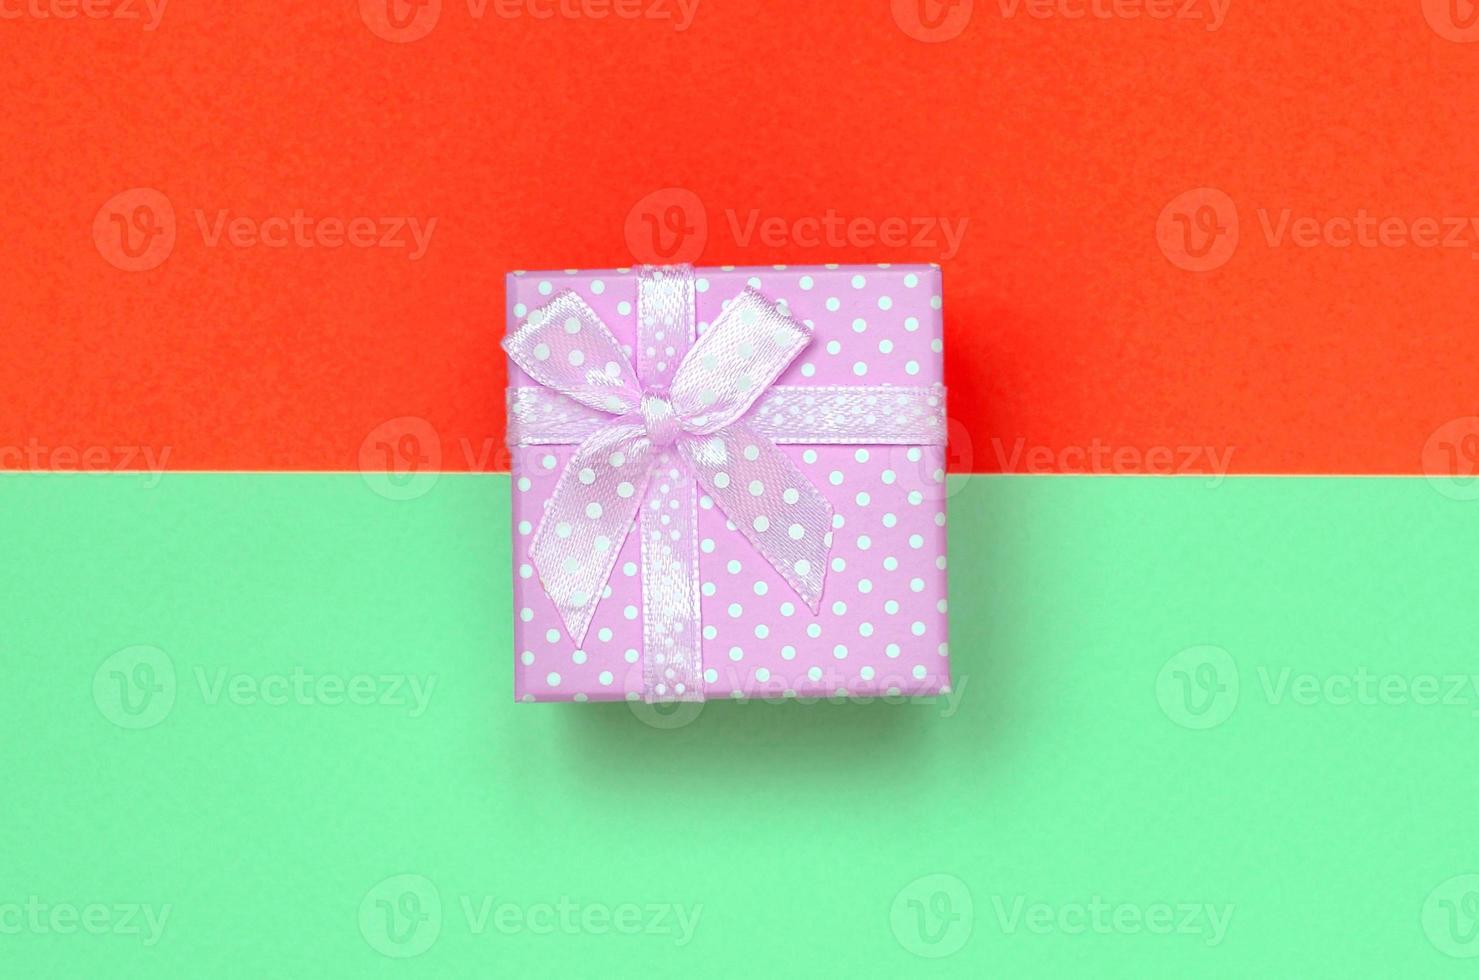 pequena caixa de presente rosa está no fundo de textura de papel de cores turquesa e vermelho pastel de moda foto